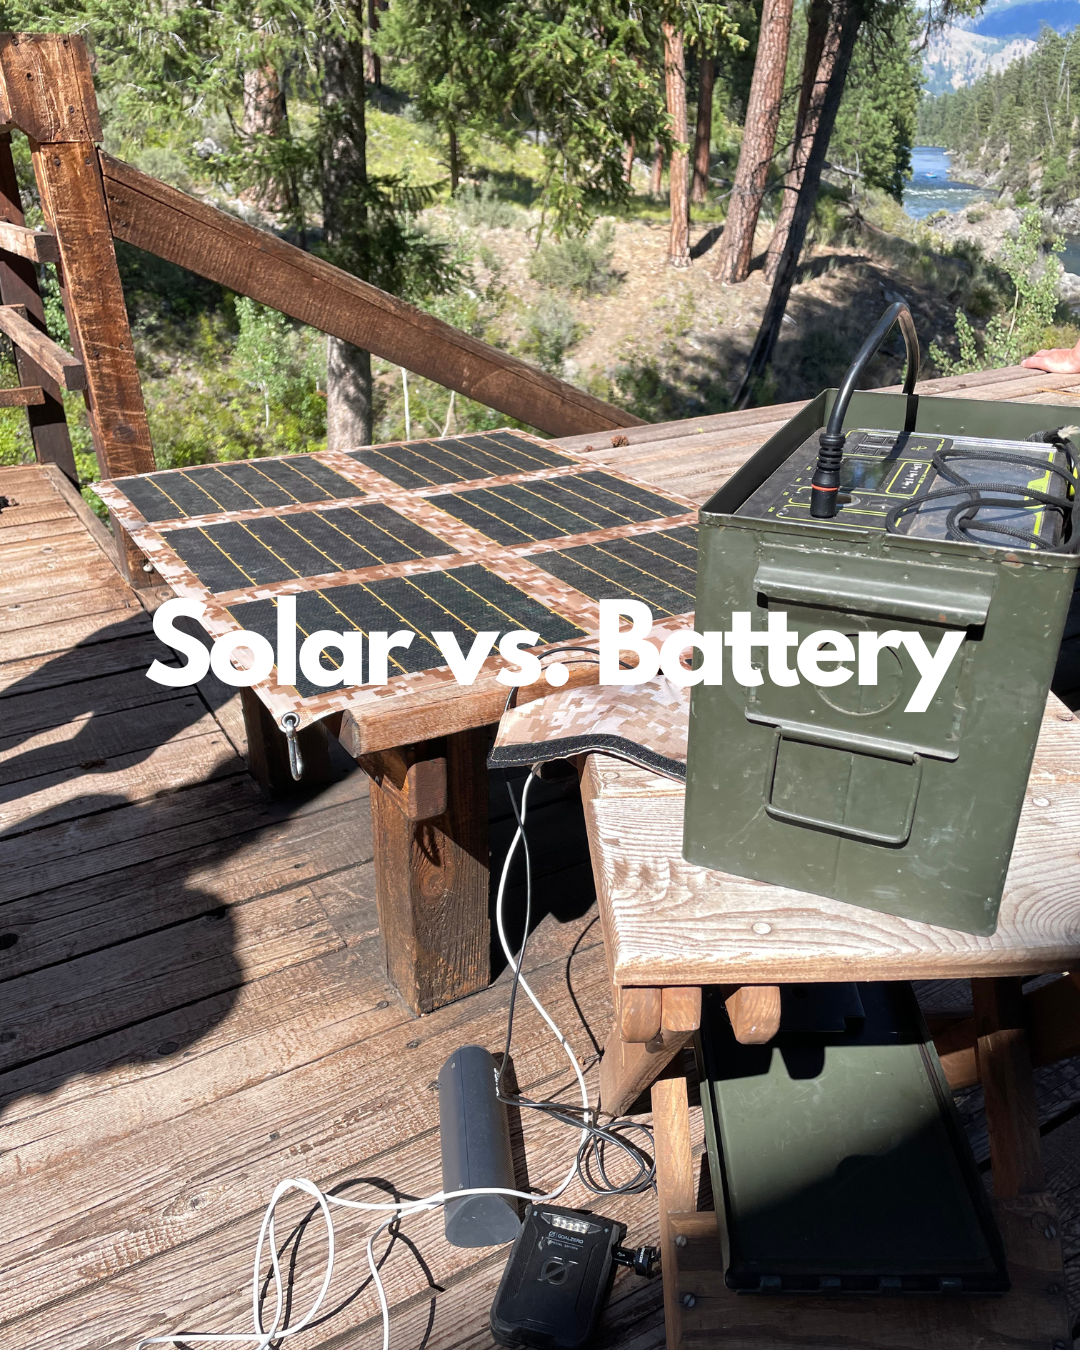 Best Battery Banks for Lightweight Solar Panels